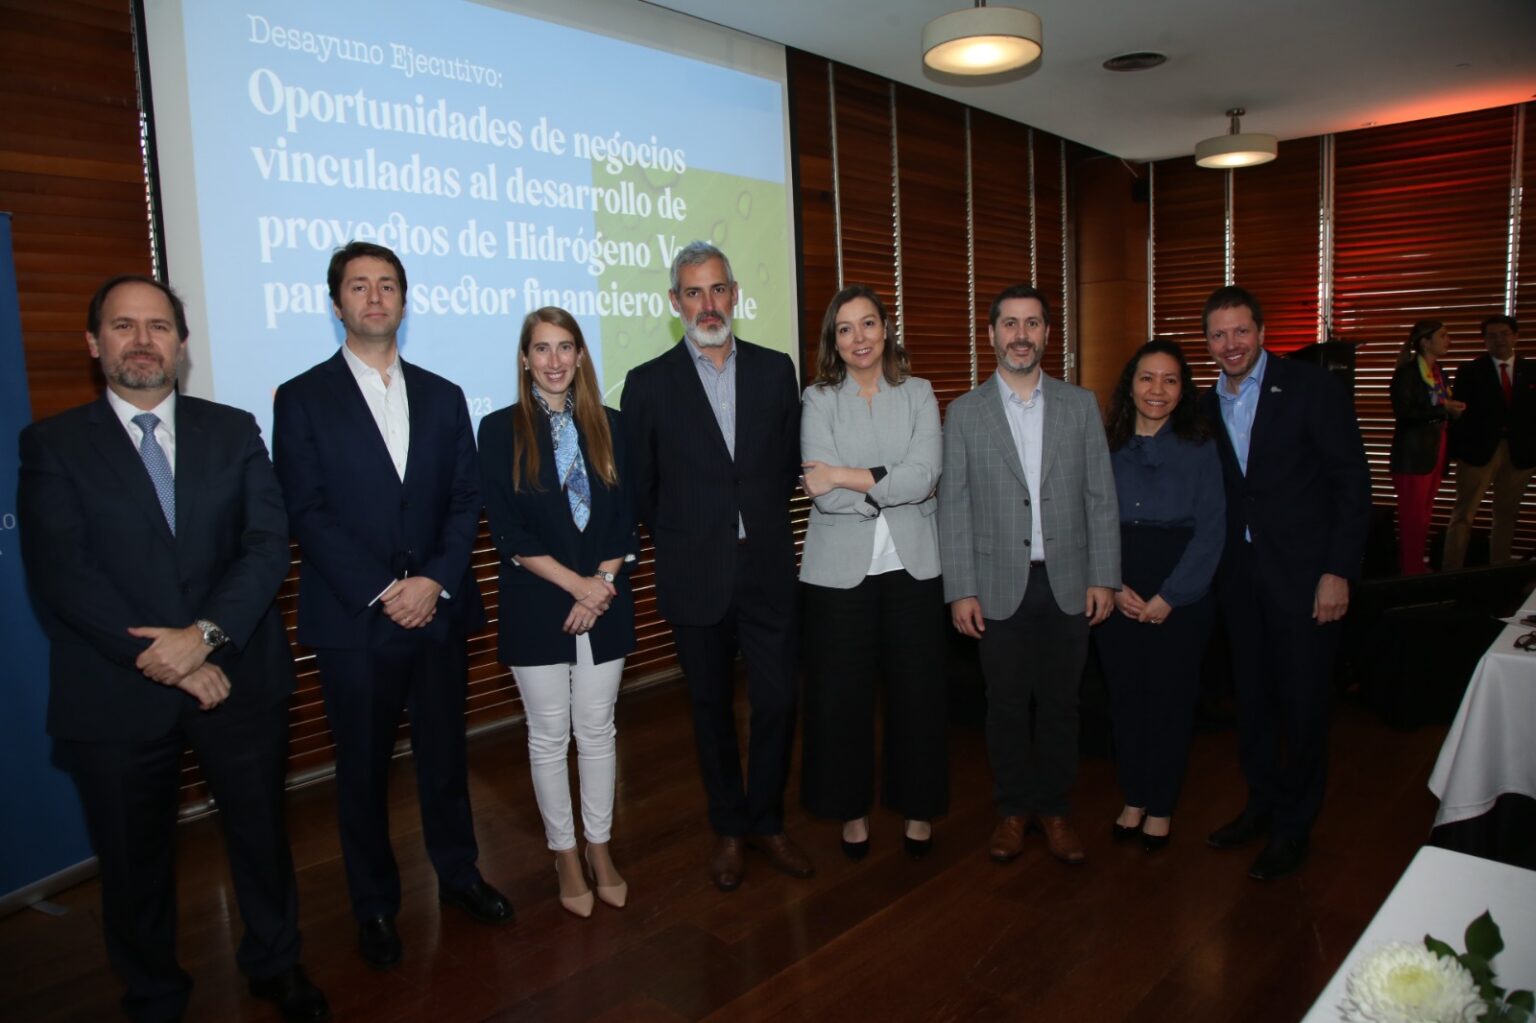 Líderes de la Industria Financiera se reúnen para explorar Oportunidades de Inversión en la Industria del Hidrógeno Verde en Chile